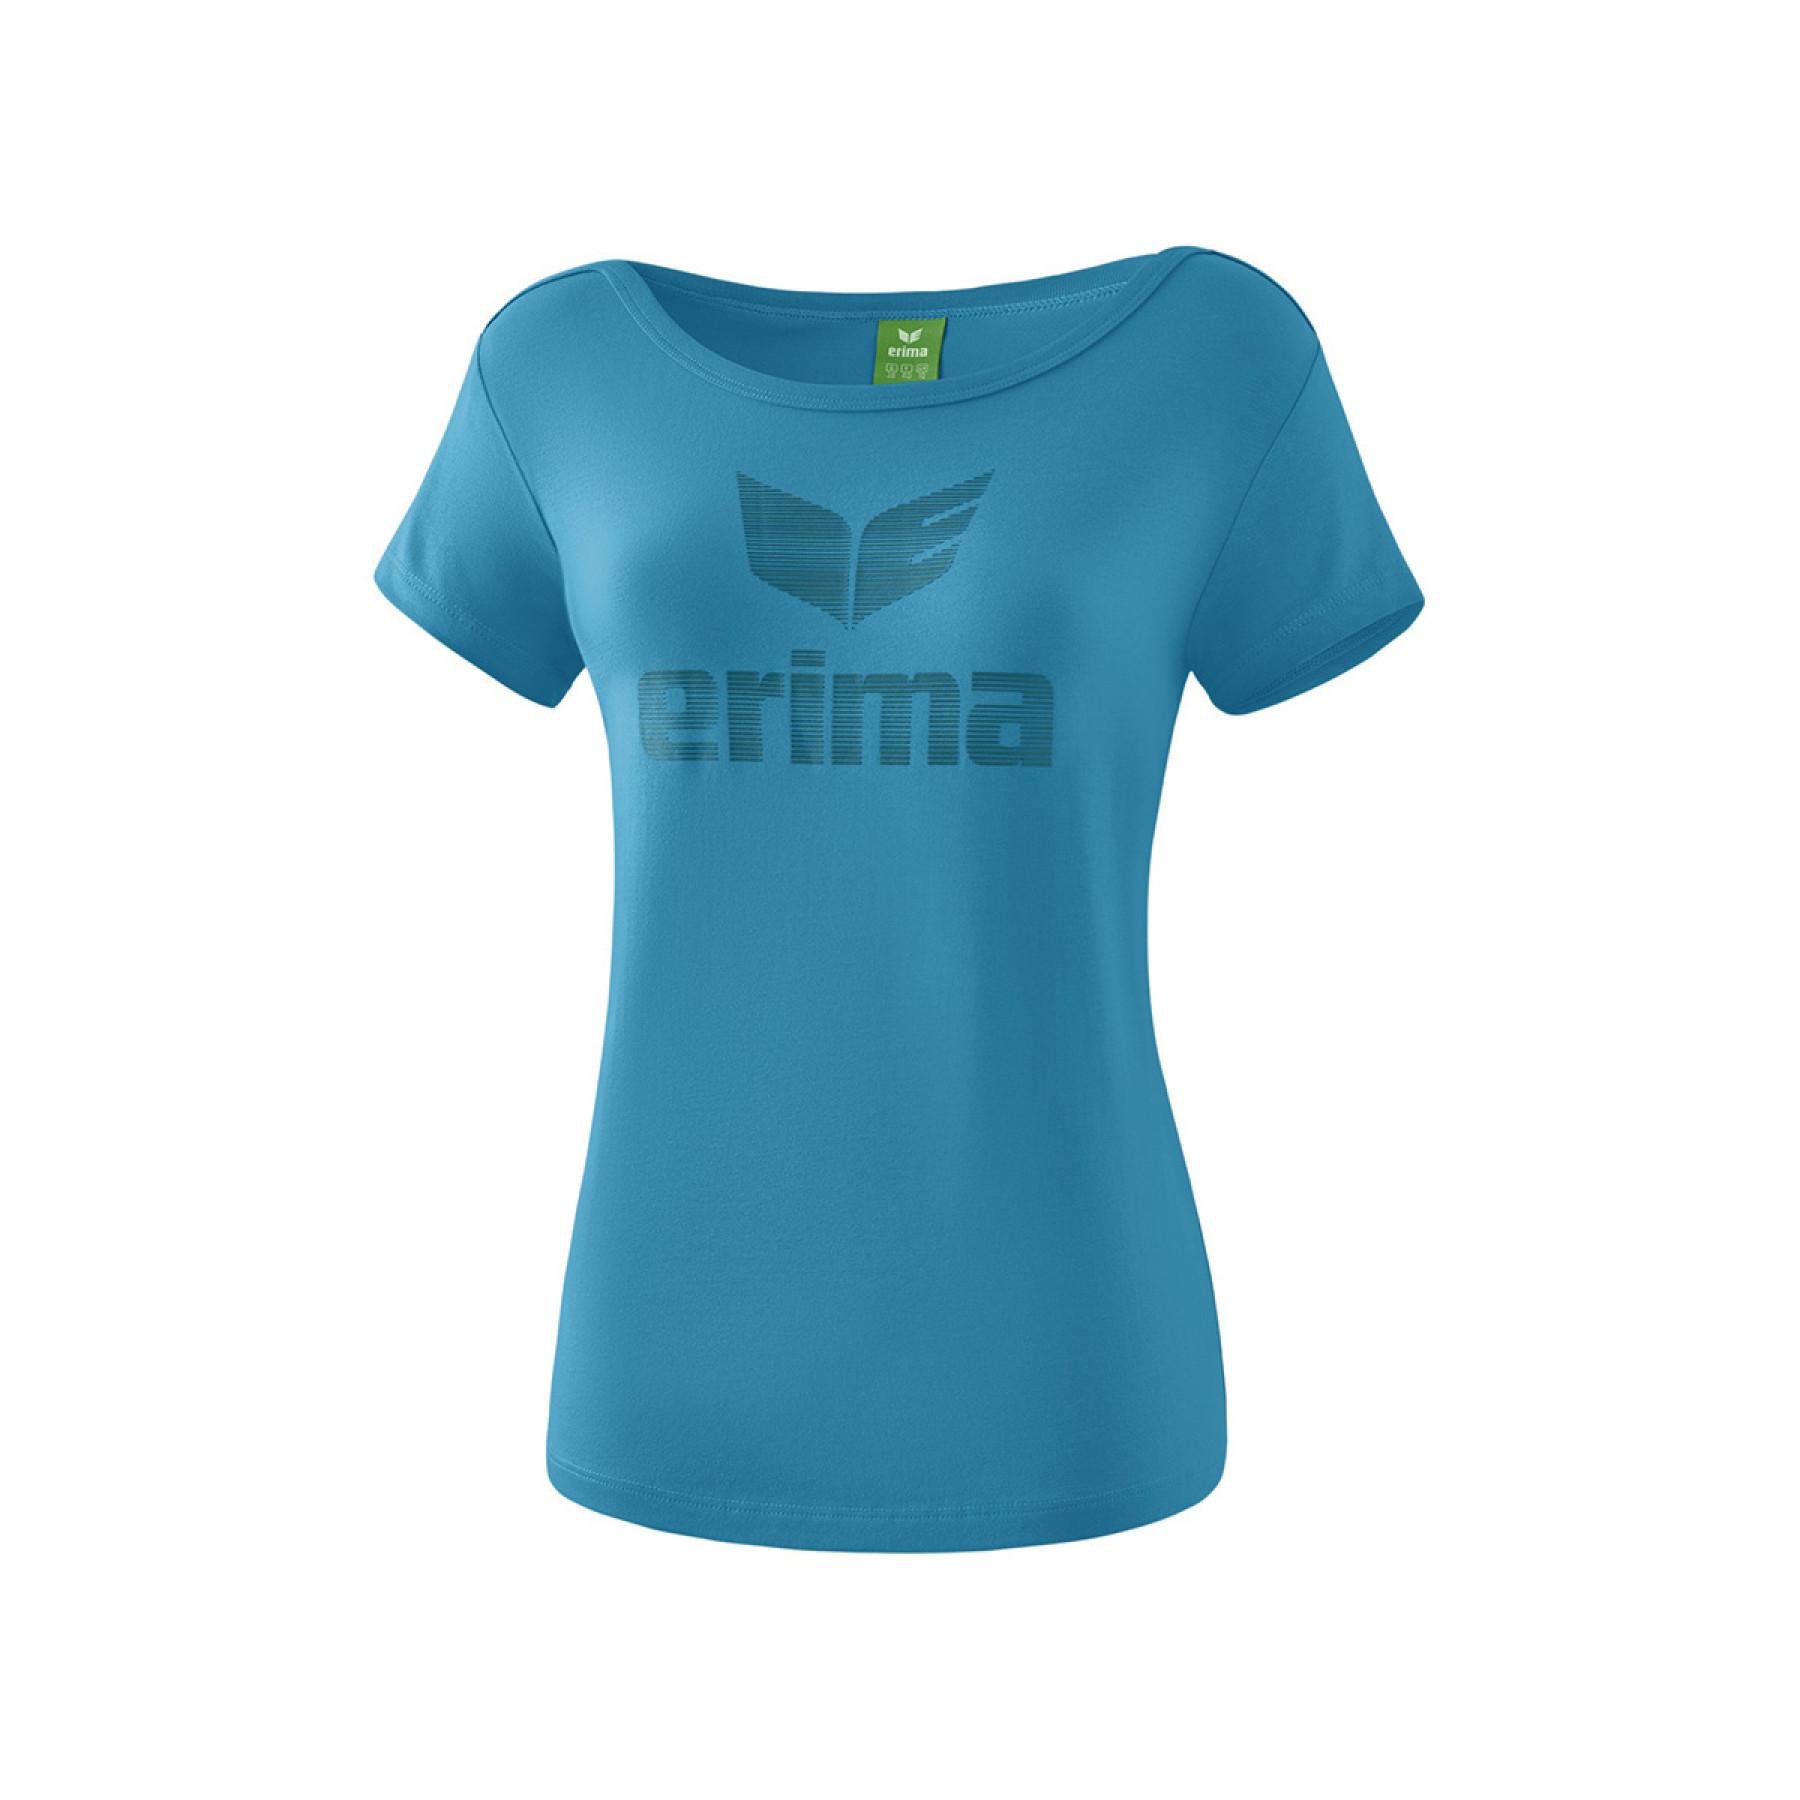 T-shirt Erima femme Essential